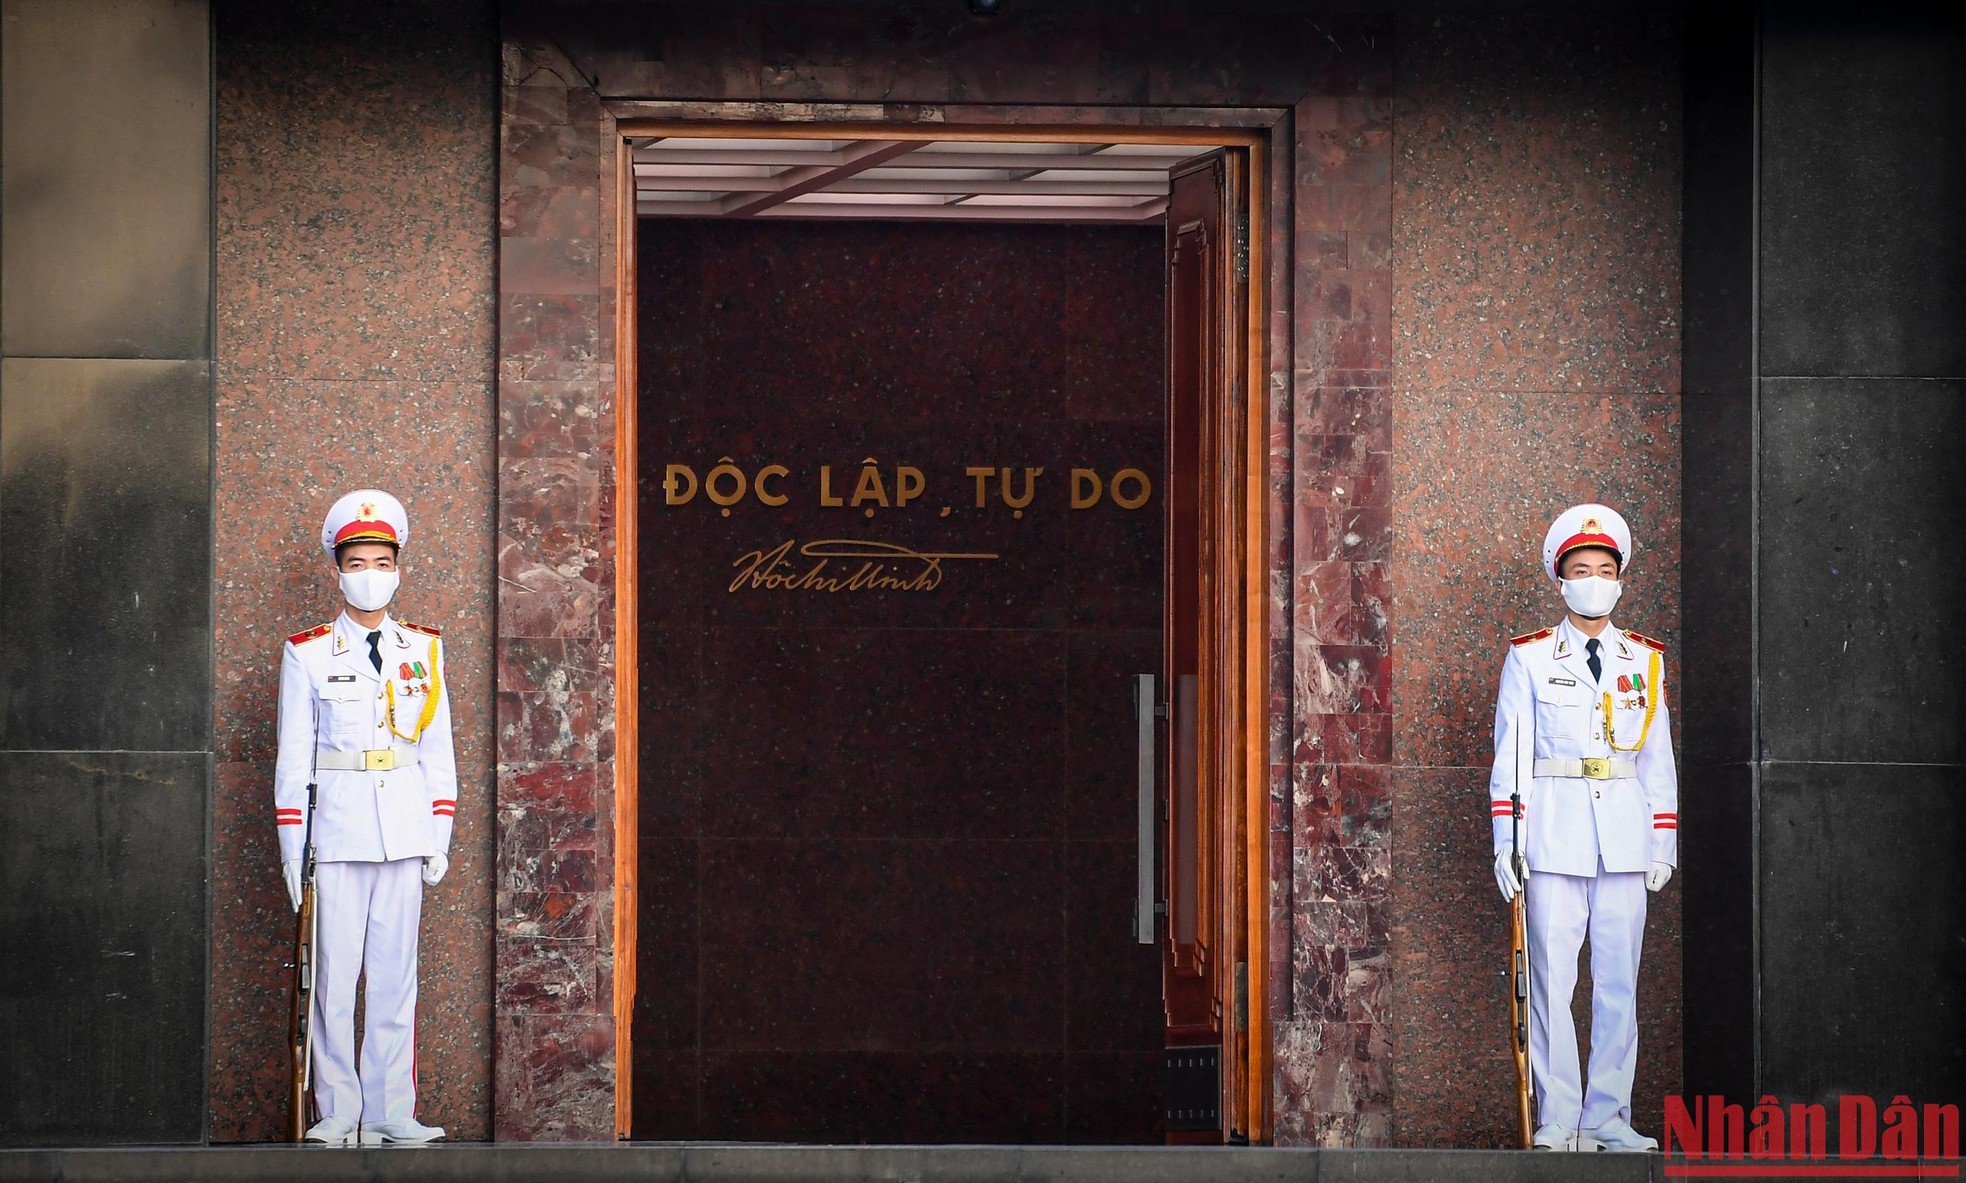 Khoảng 5 giờ 40 phút, khi các chiến sĩ tiêu binh chuẩn thực hiện nghi lễ là lúc cửa Lăng Chủ tịch Hồ Chí Minh được mở ra.